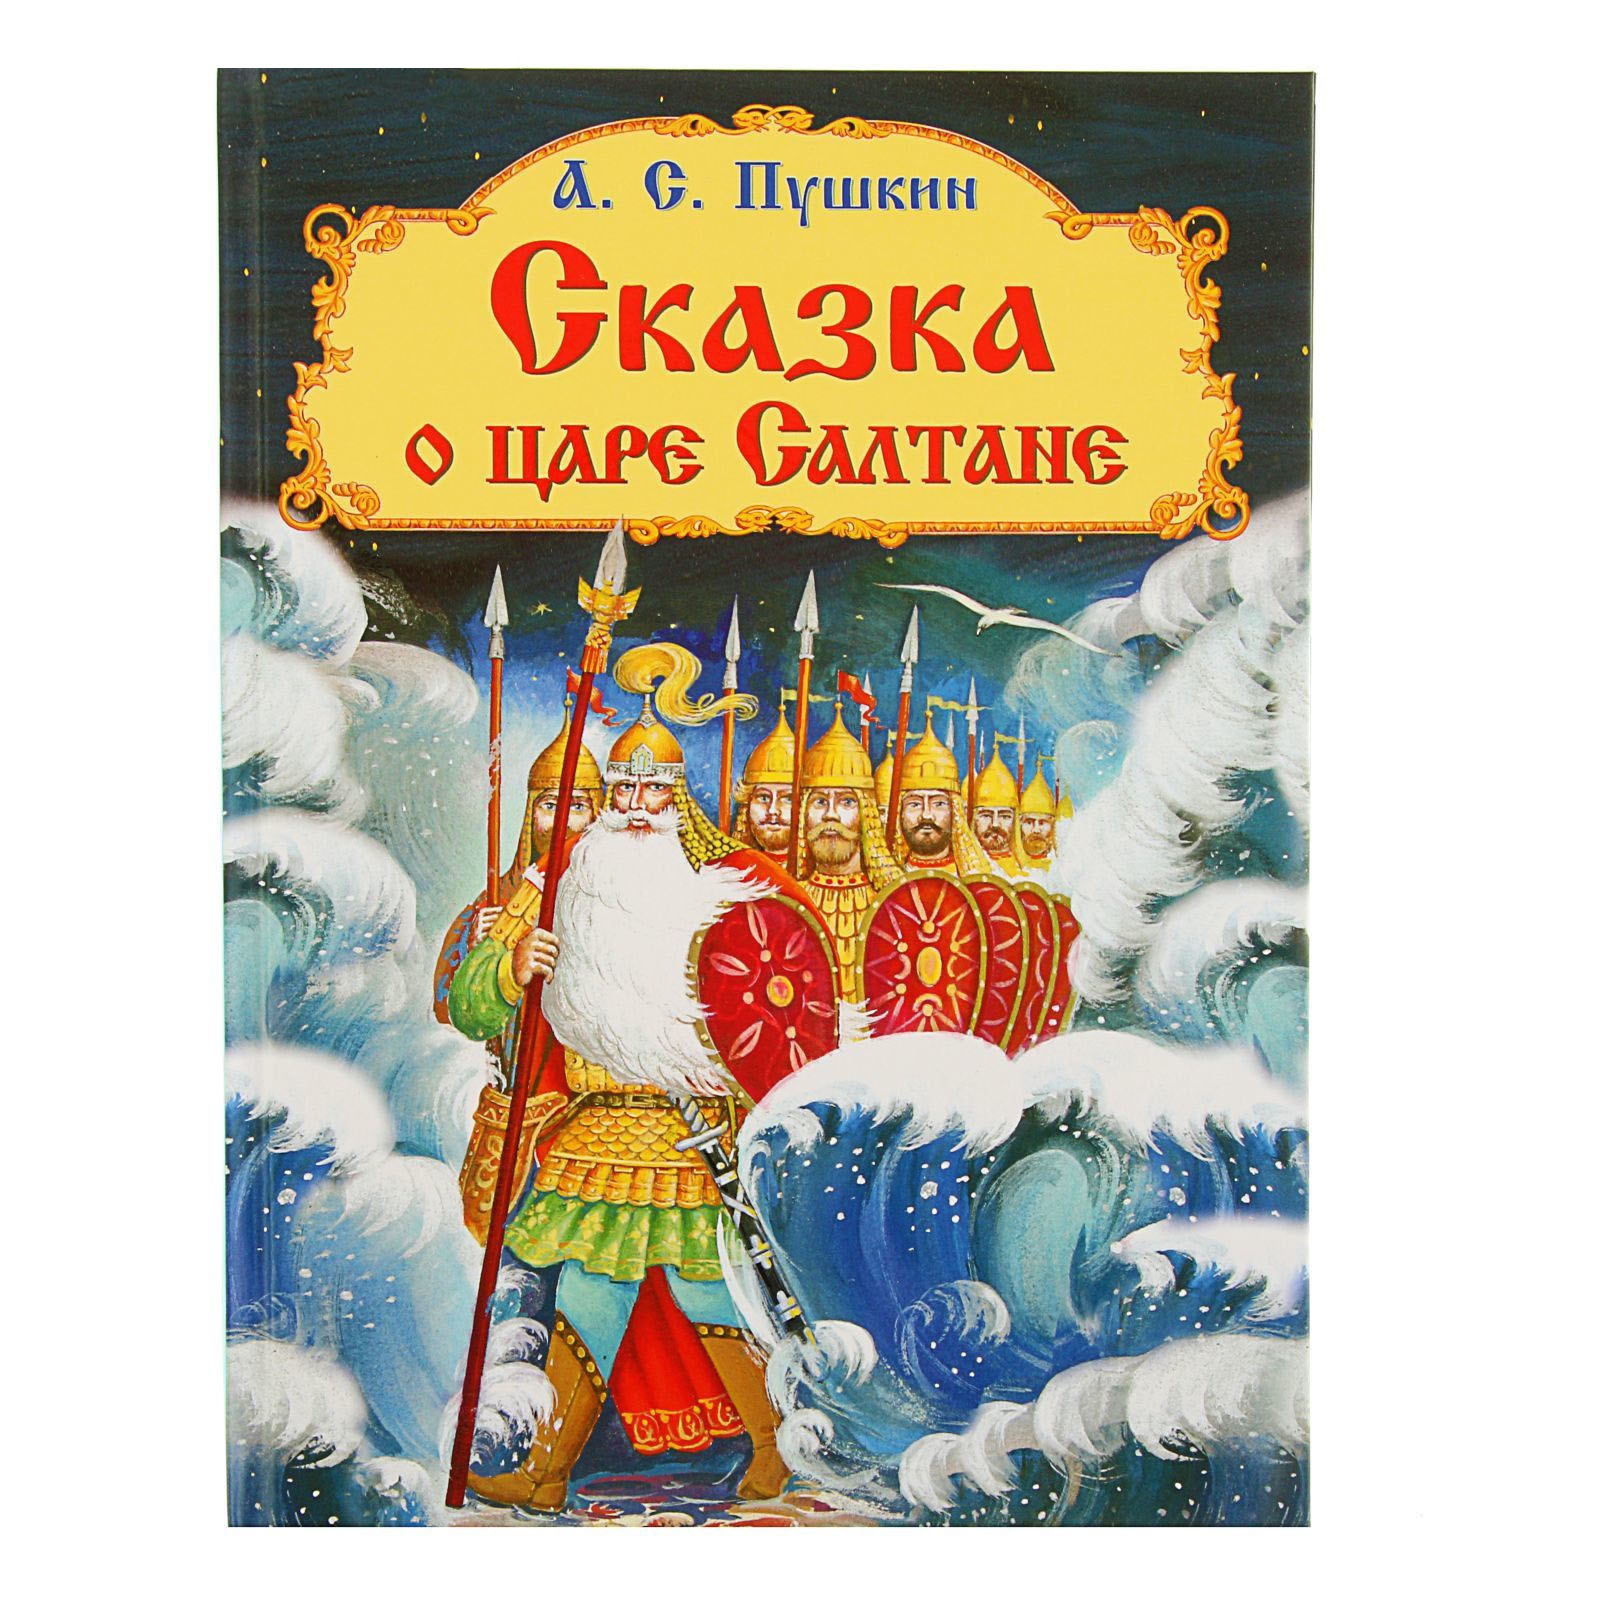 Сказка с а пушкина: Сказки Пушкина для детей - читать бесплатно онлайн